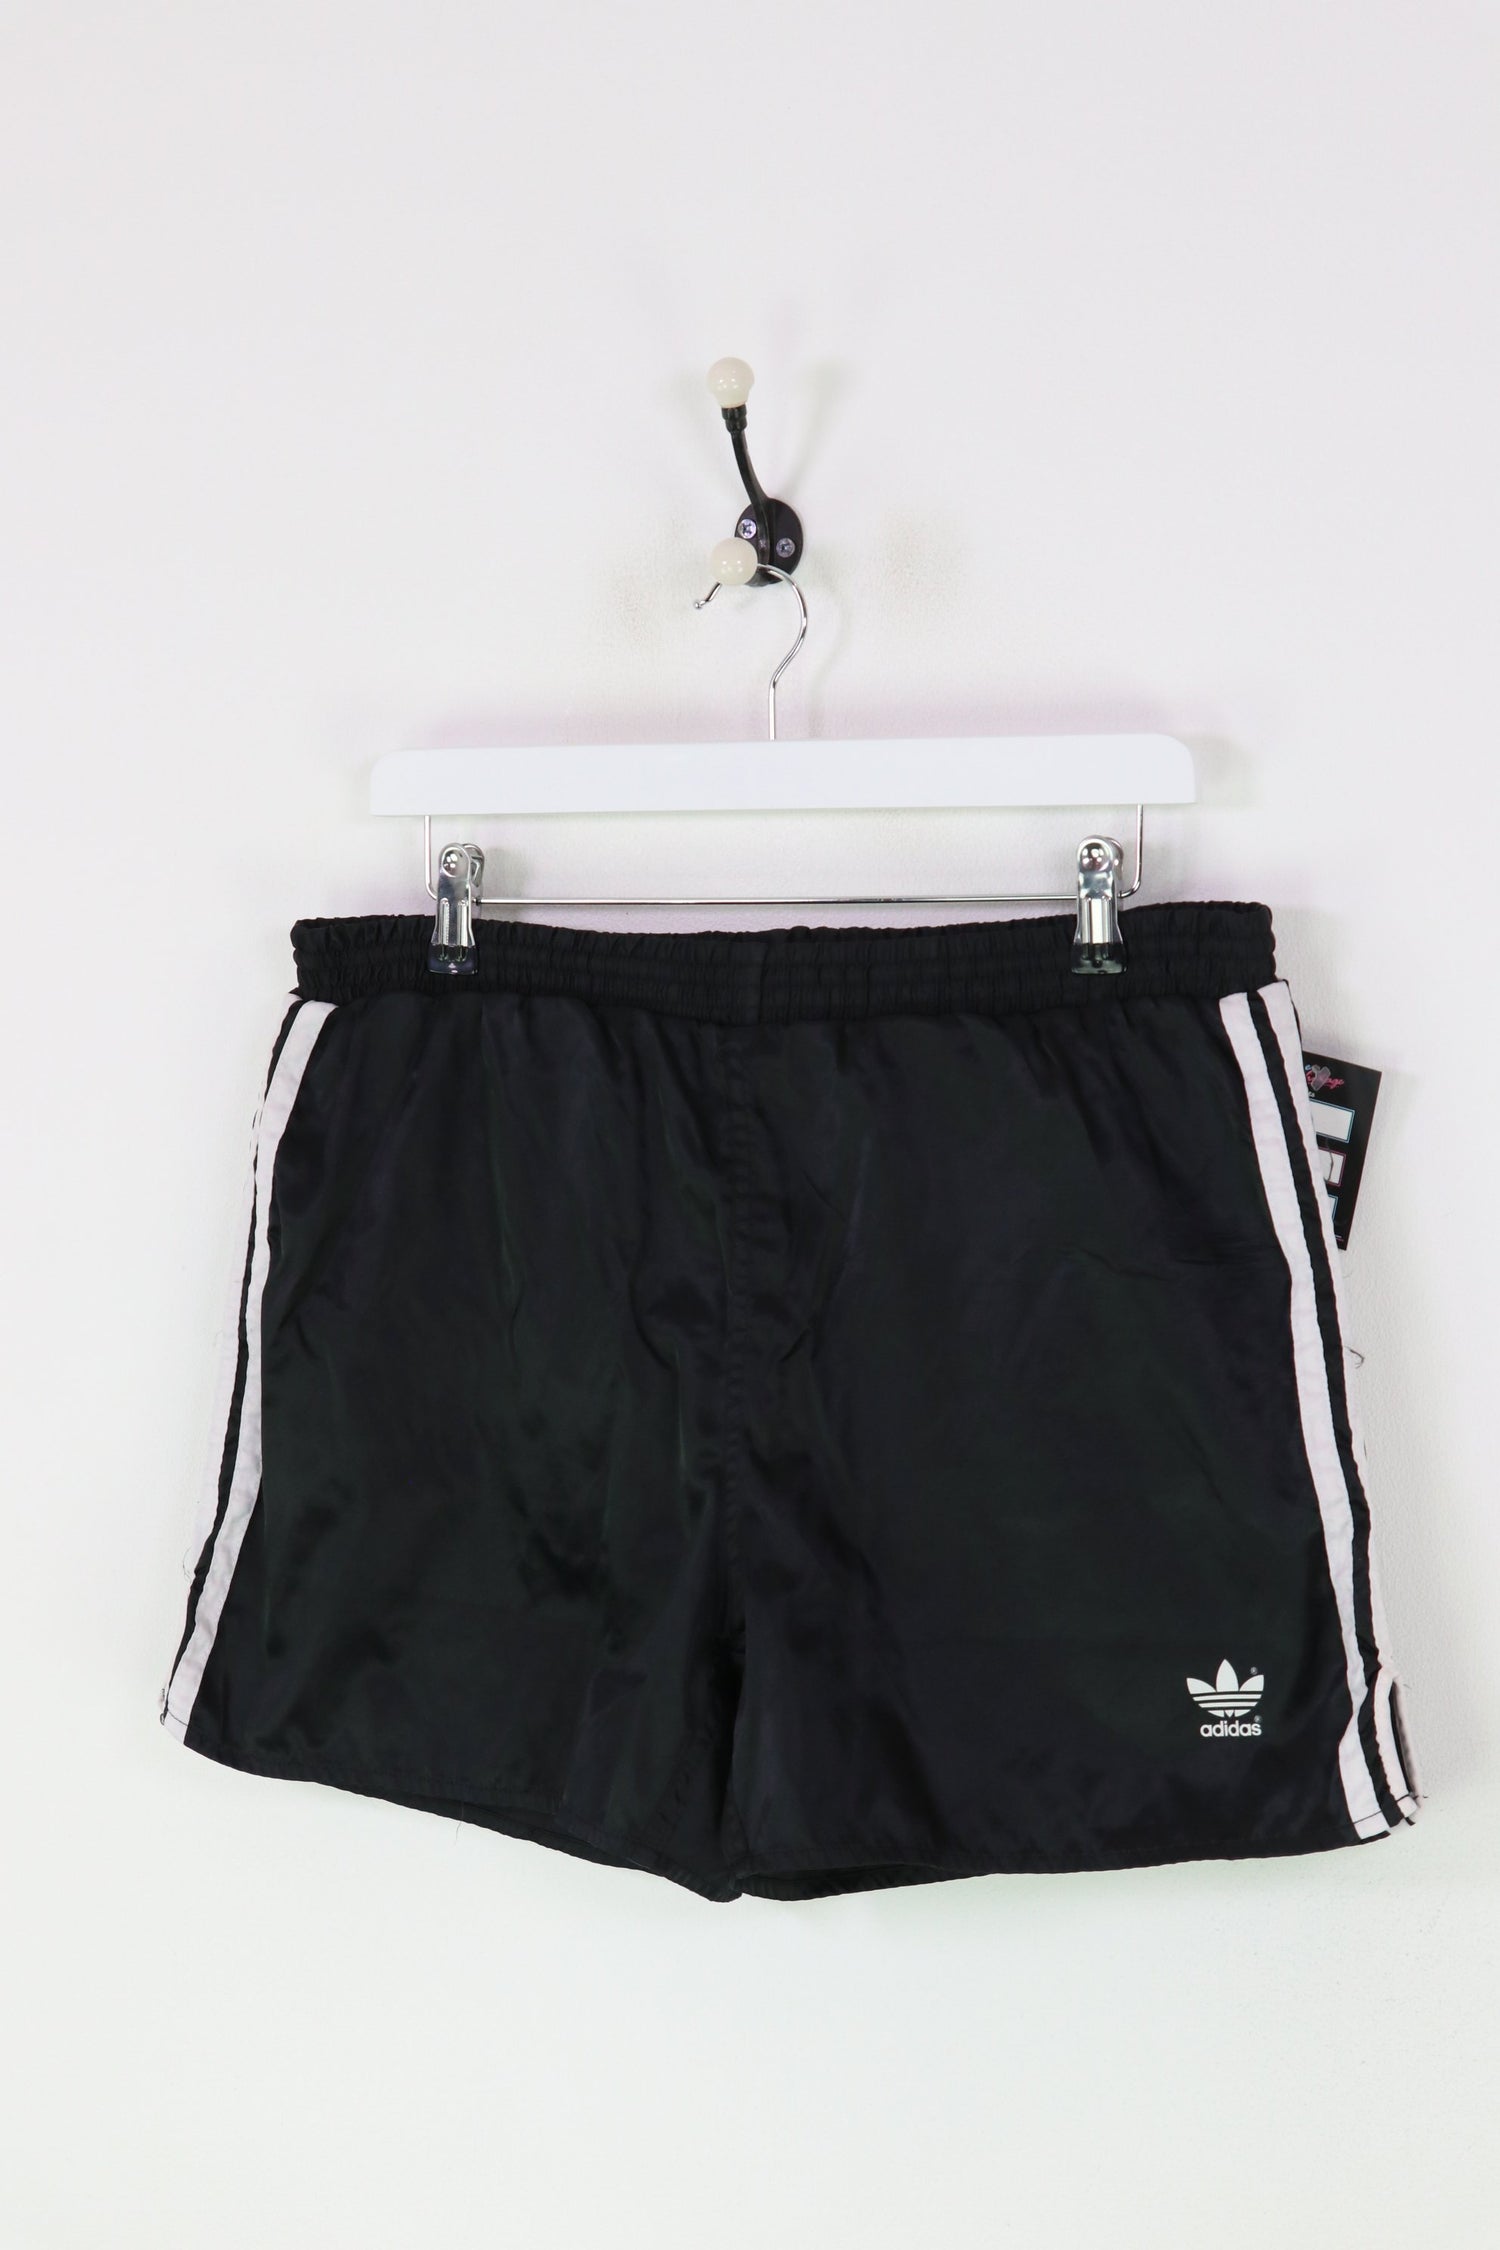 Adidas Shorts Black Large